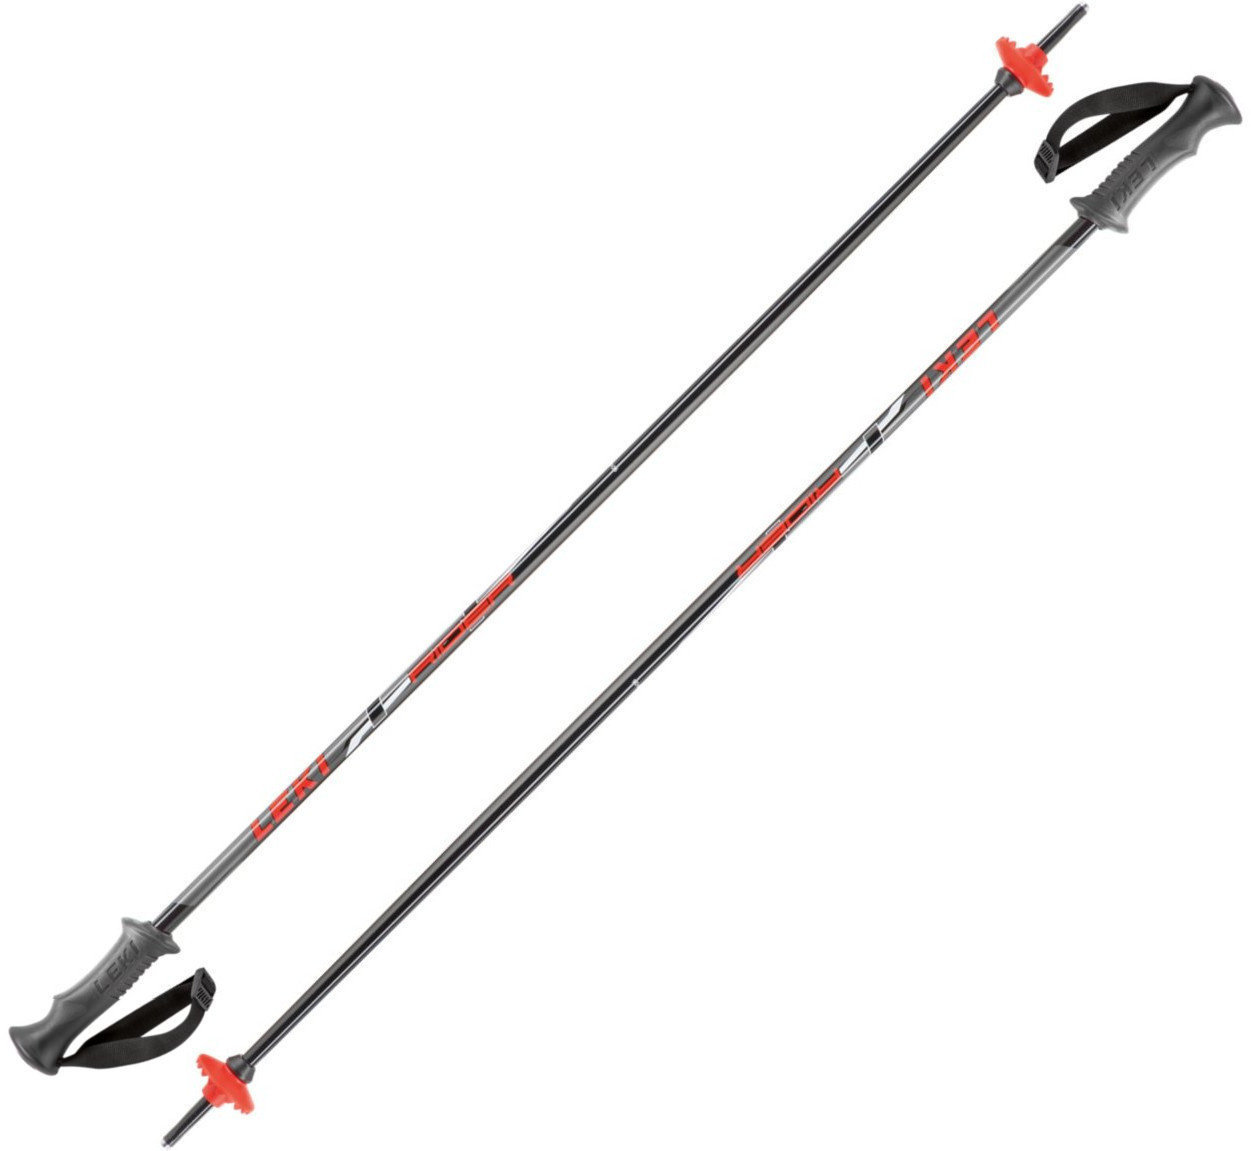 Ski Poles Leki Rider Black/Red-White-Anthracite 105 17/18